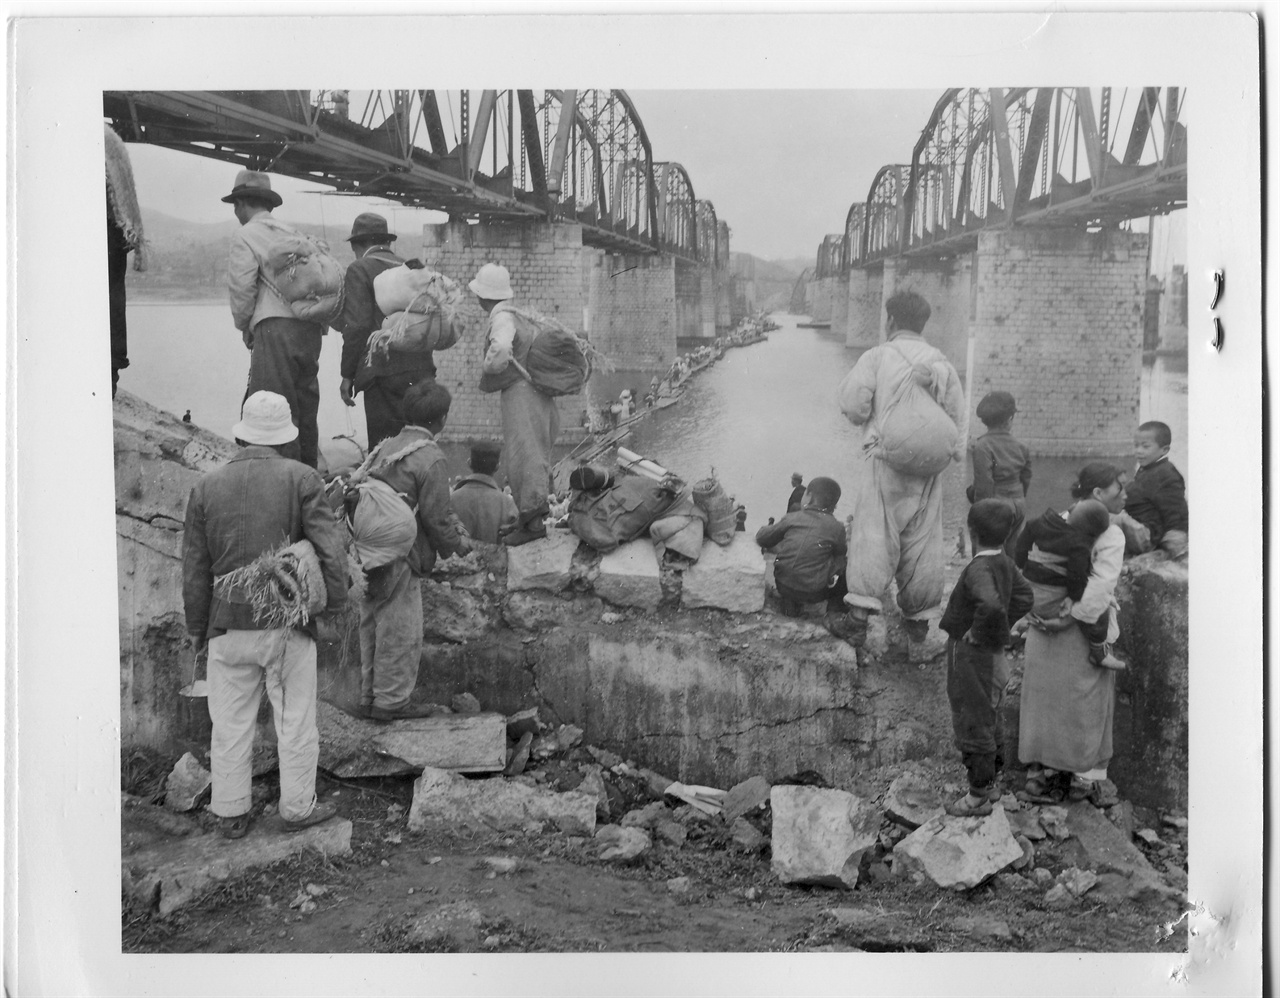  1951. 5. 29. 서울. 중국군 춘계대공세로 서울시민들이 한강을 부교로 건너고자 몰려들고 있다. 